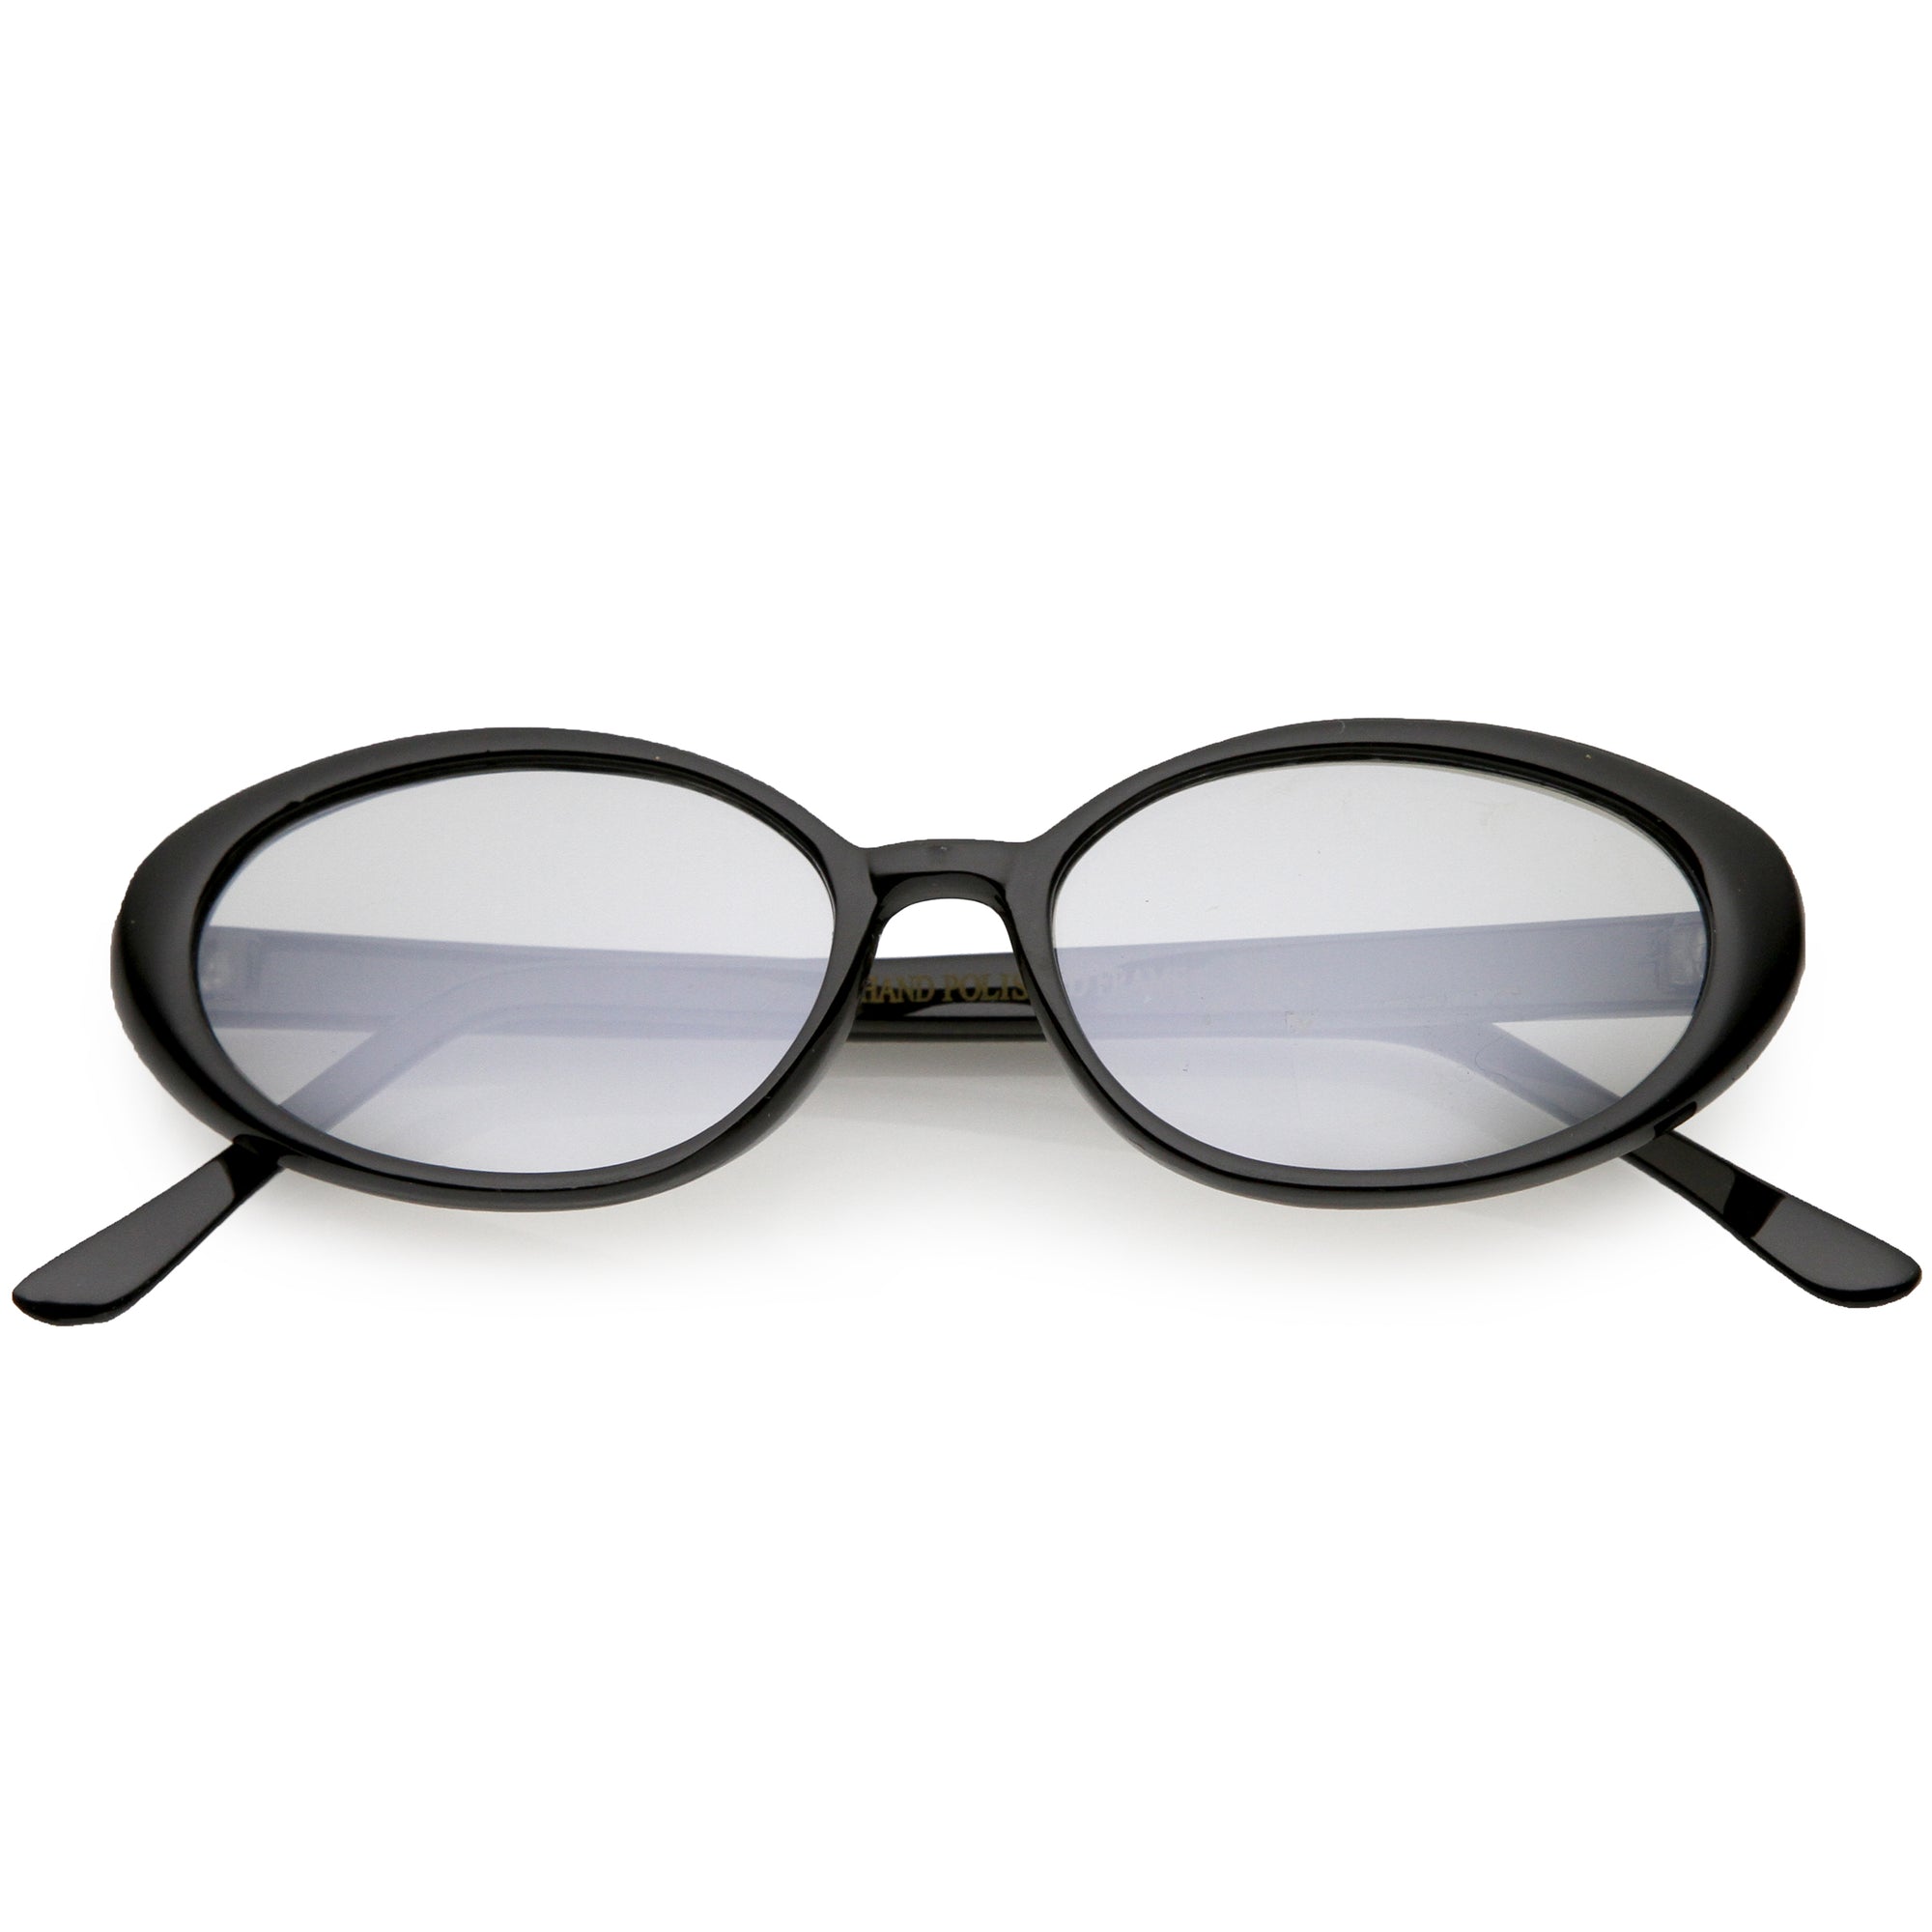 Gafas de sol ovaladas con lentes de tono de color vintage verdadero para mujer C697